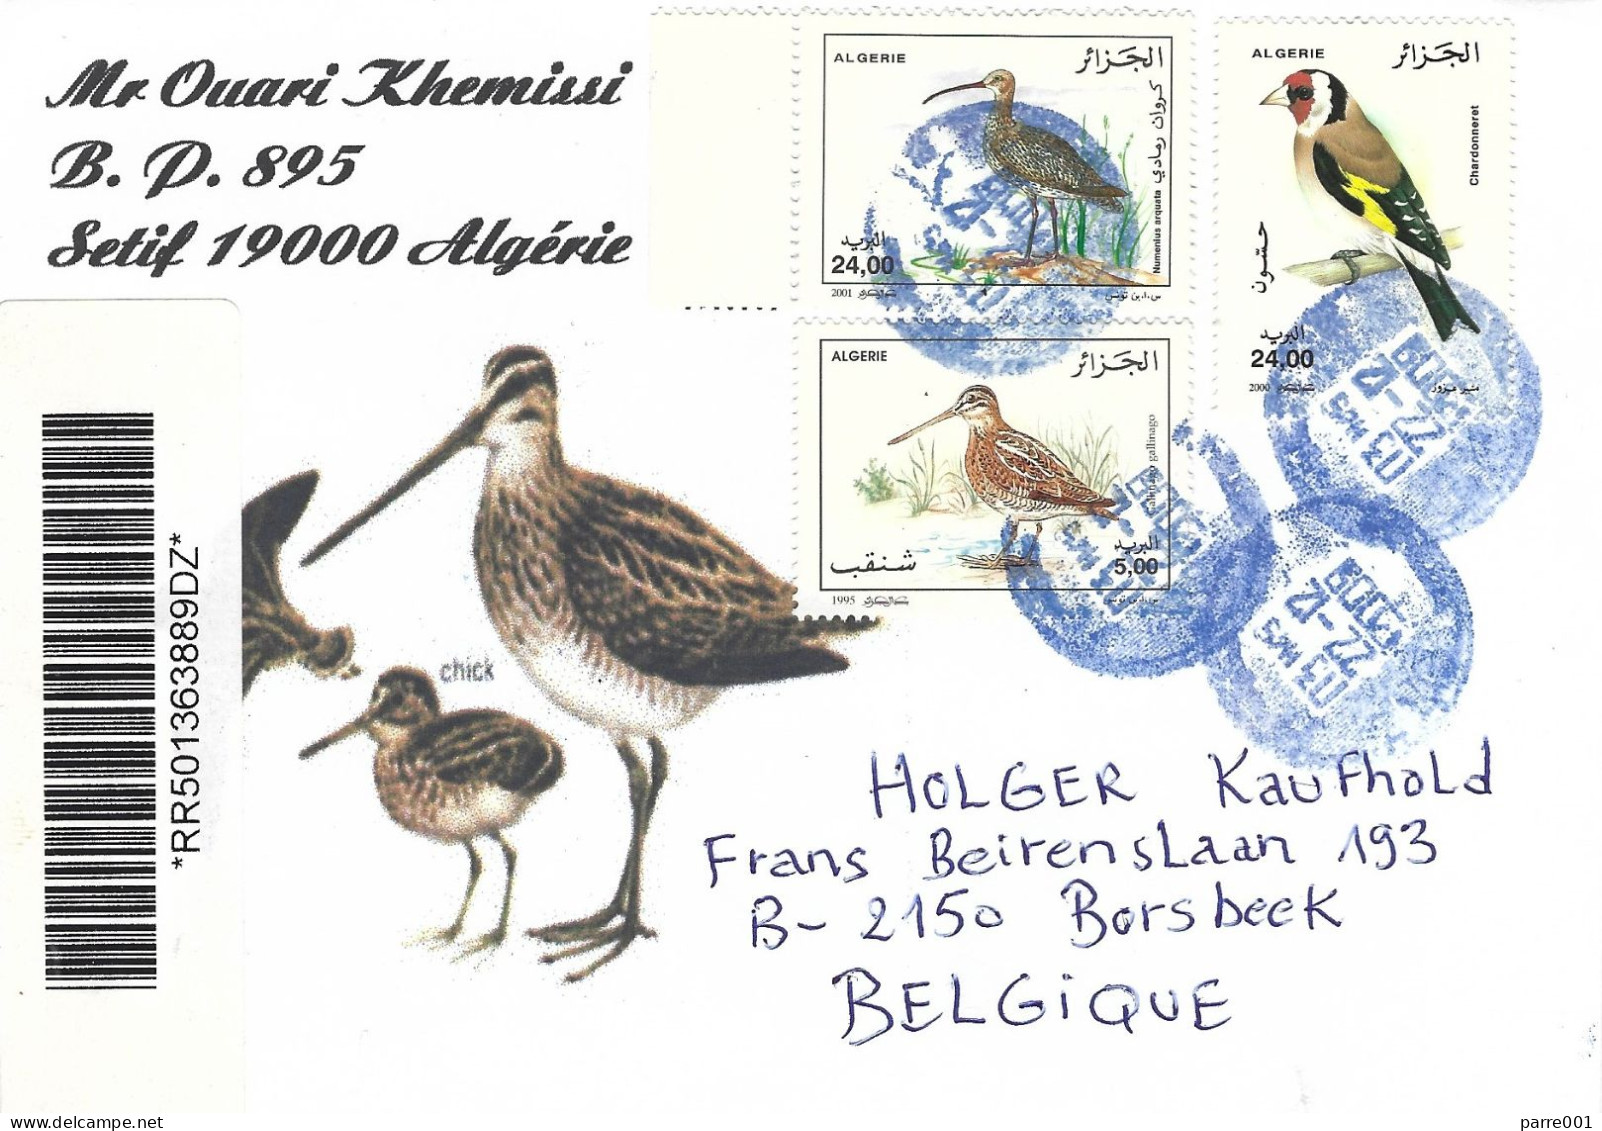 Algeria Algerie 2009 Alger Gold Finch Common Curlew Numenius Arquata Registered Cover - Zangvogels